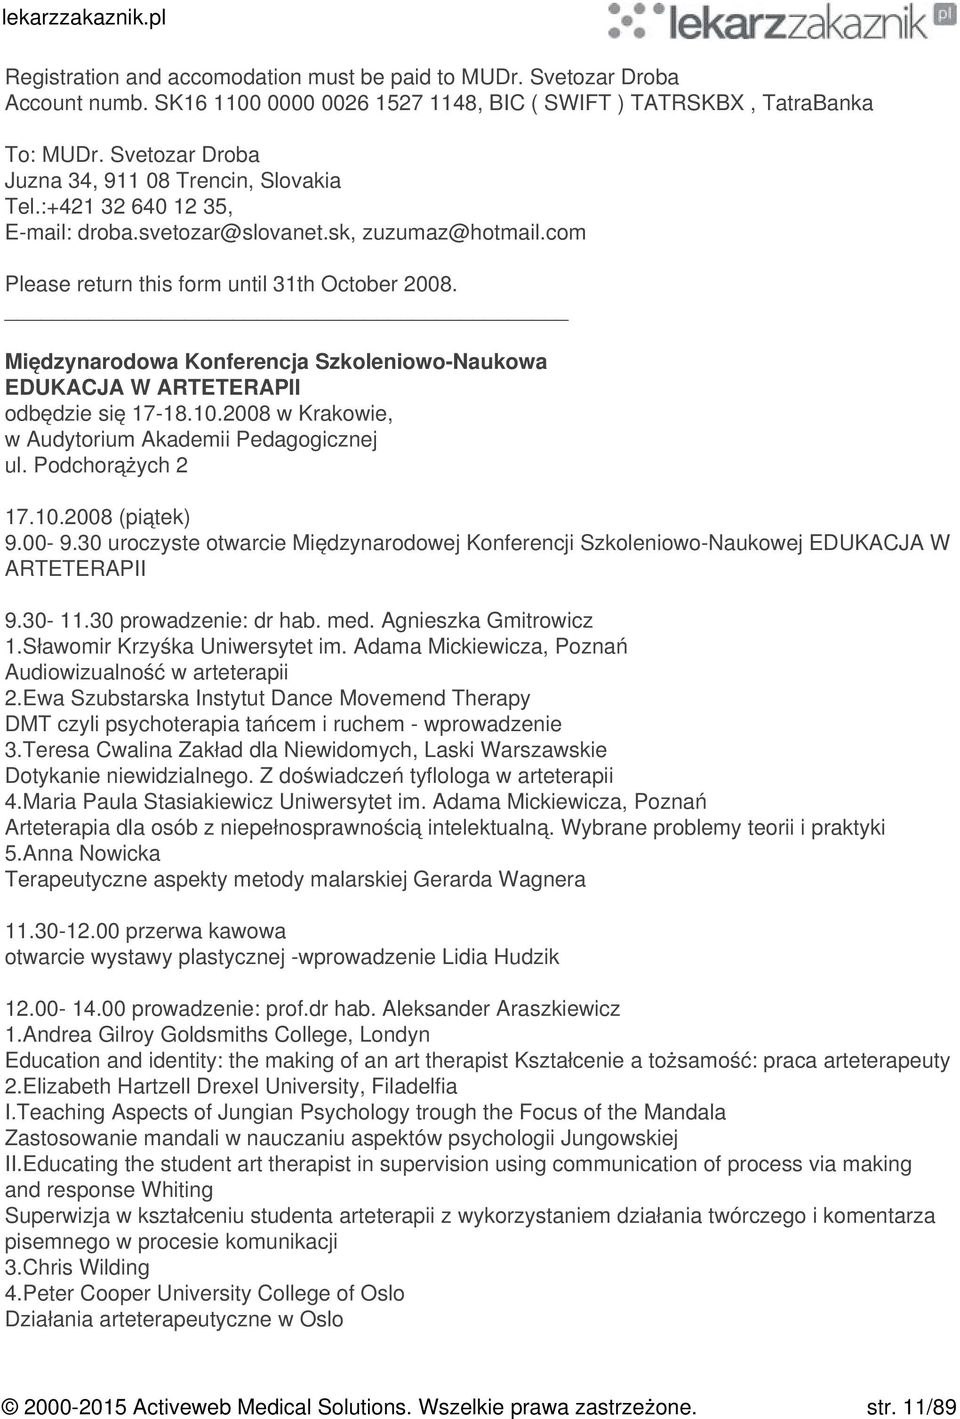 Międzynarodowa Konferencja Szkoleniowo-Naukowa EDUKACJA W ARTETERAPII odbędzie się 17-18.10.2008 w Krakowie, w Audytorium Akademii Pedagogicznej ul. Podchorążych 2 17.10.2008 (piątek) 9.00-9.